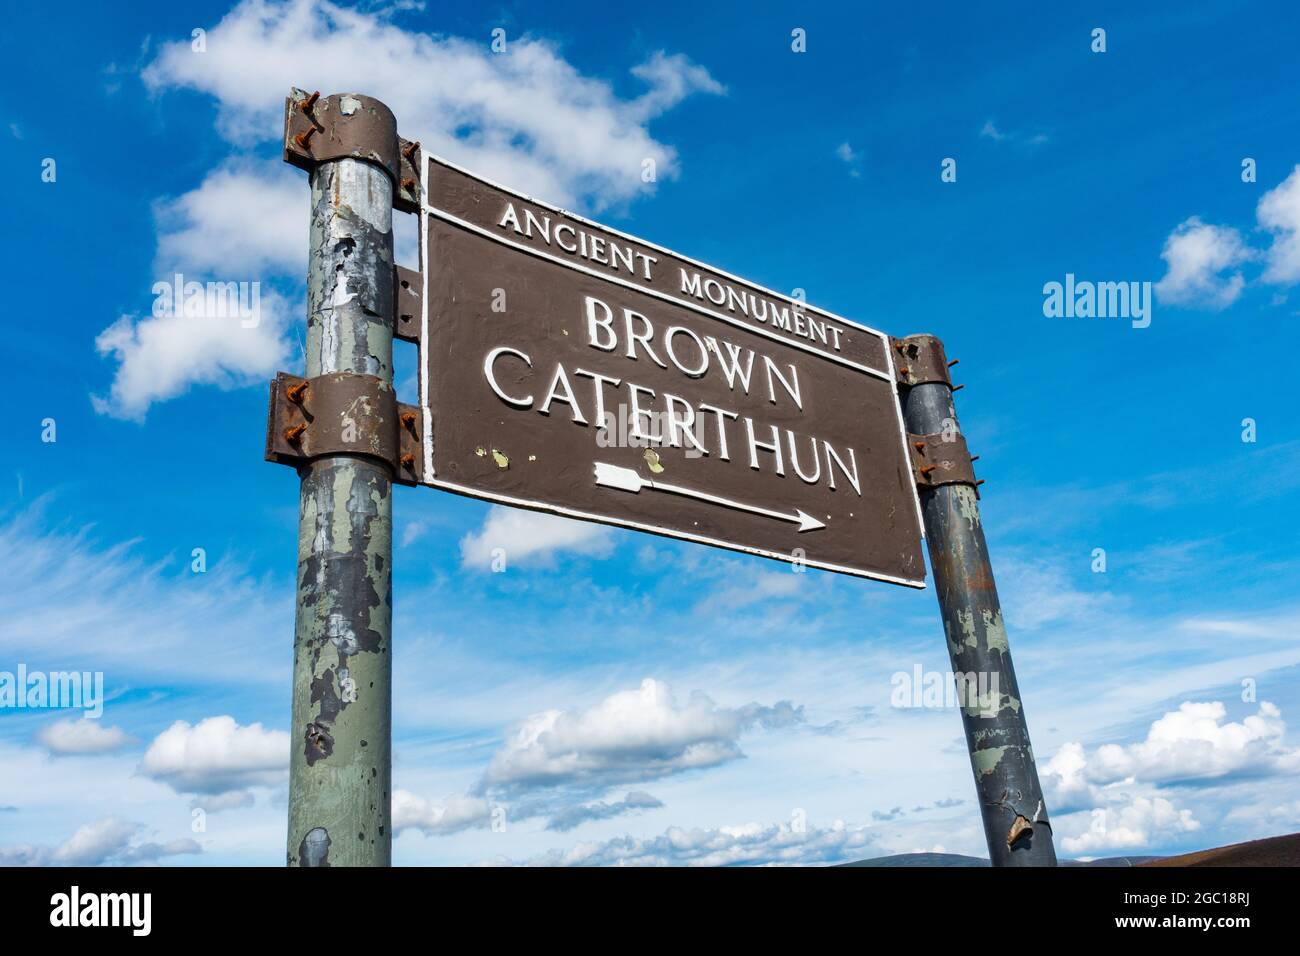 Panneau marquant le chemin vers le fort de la colline de l'âge de fer connu sous le nom de Brown Caterthun près de Brechin, Angus, Écosse Banque D'Images